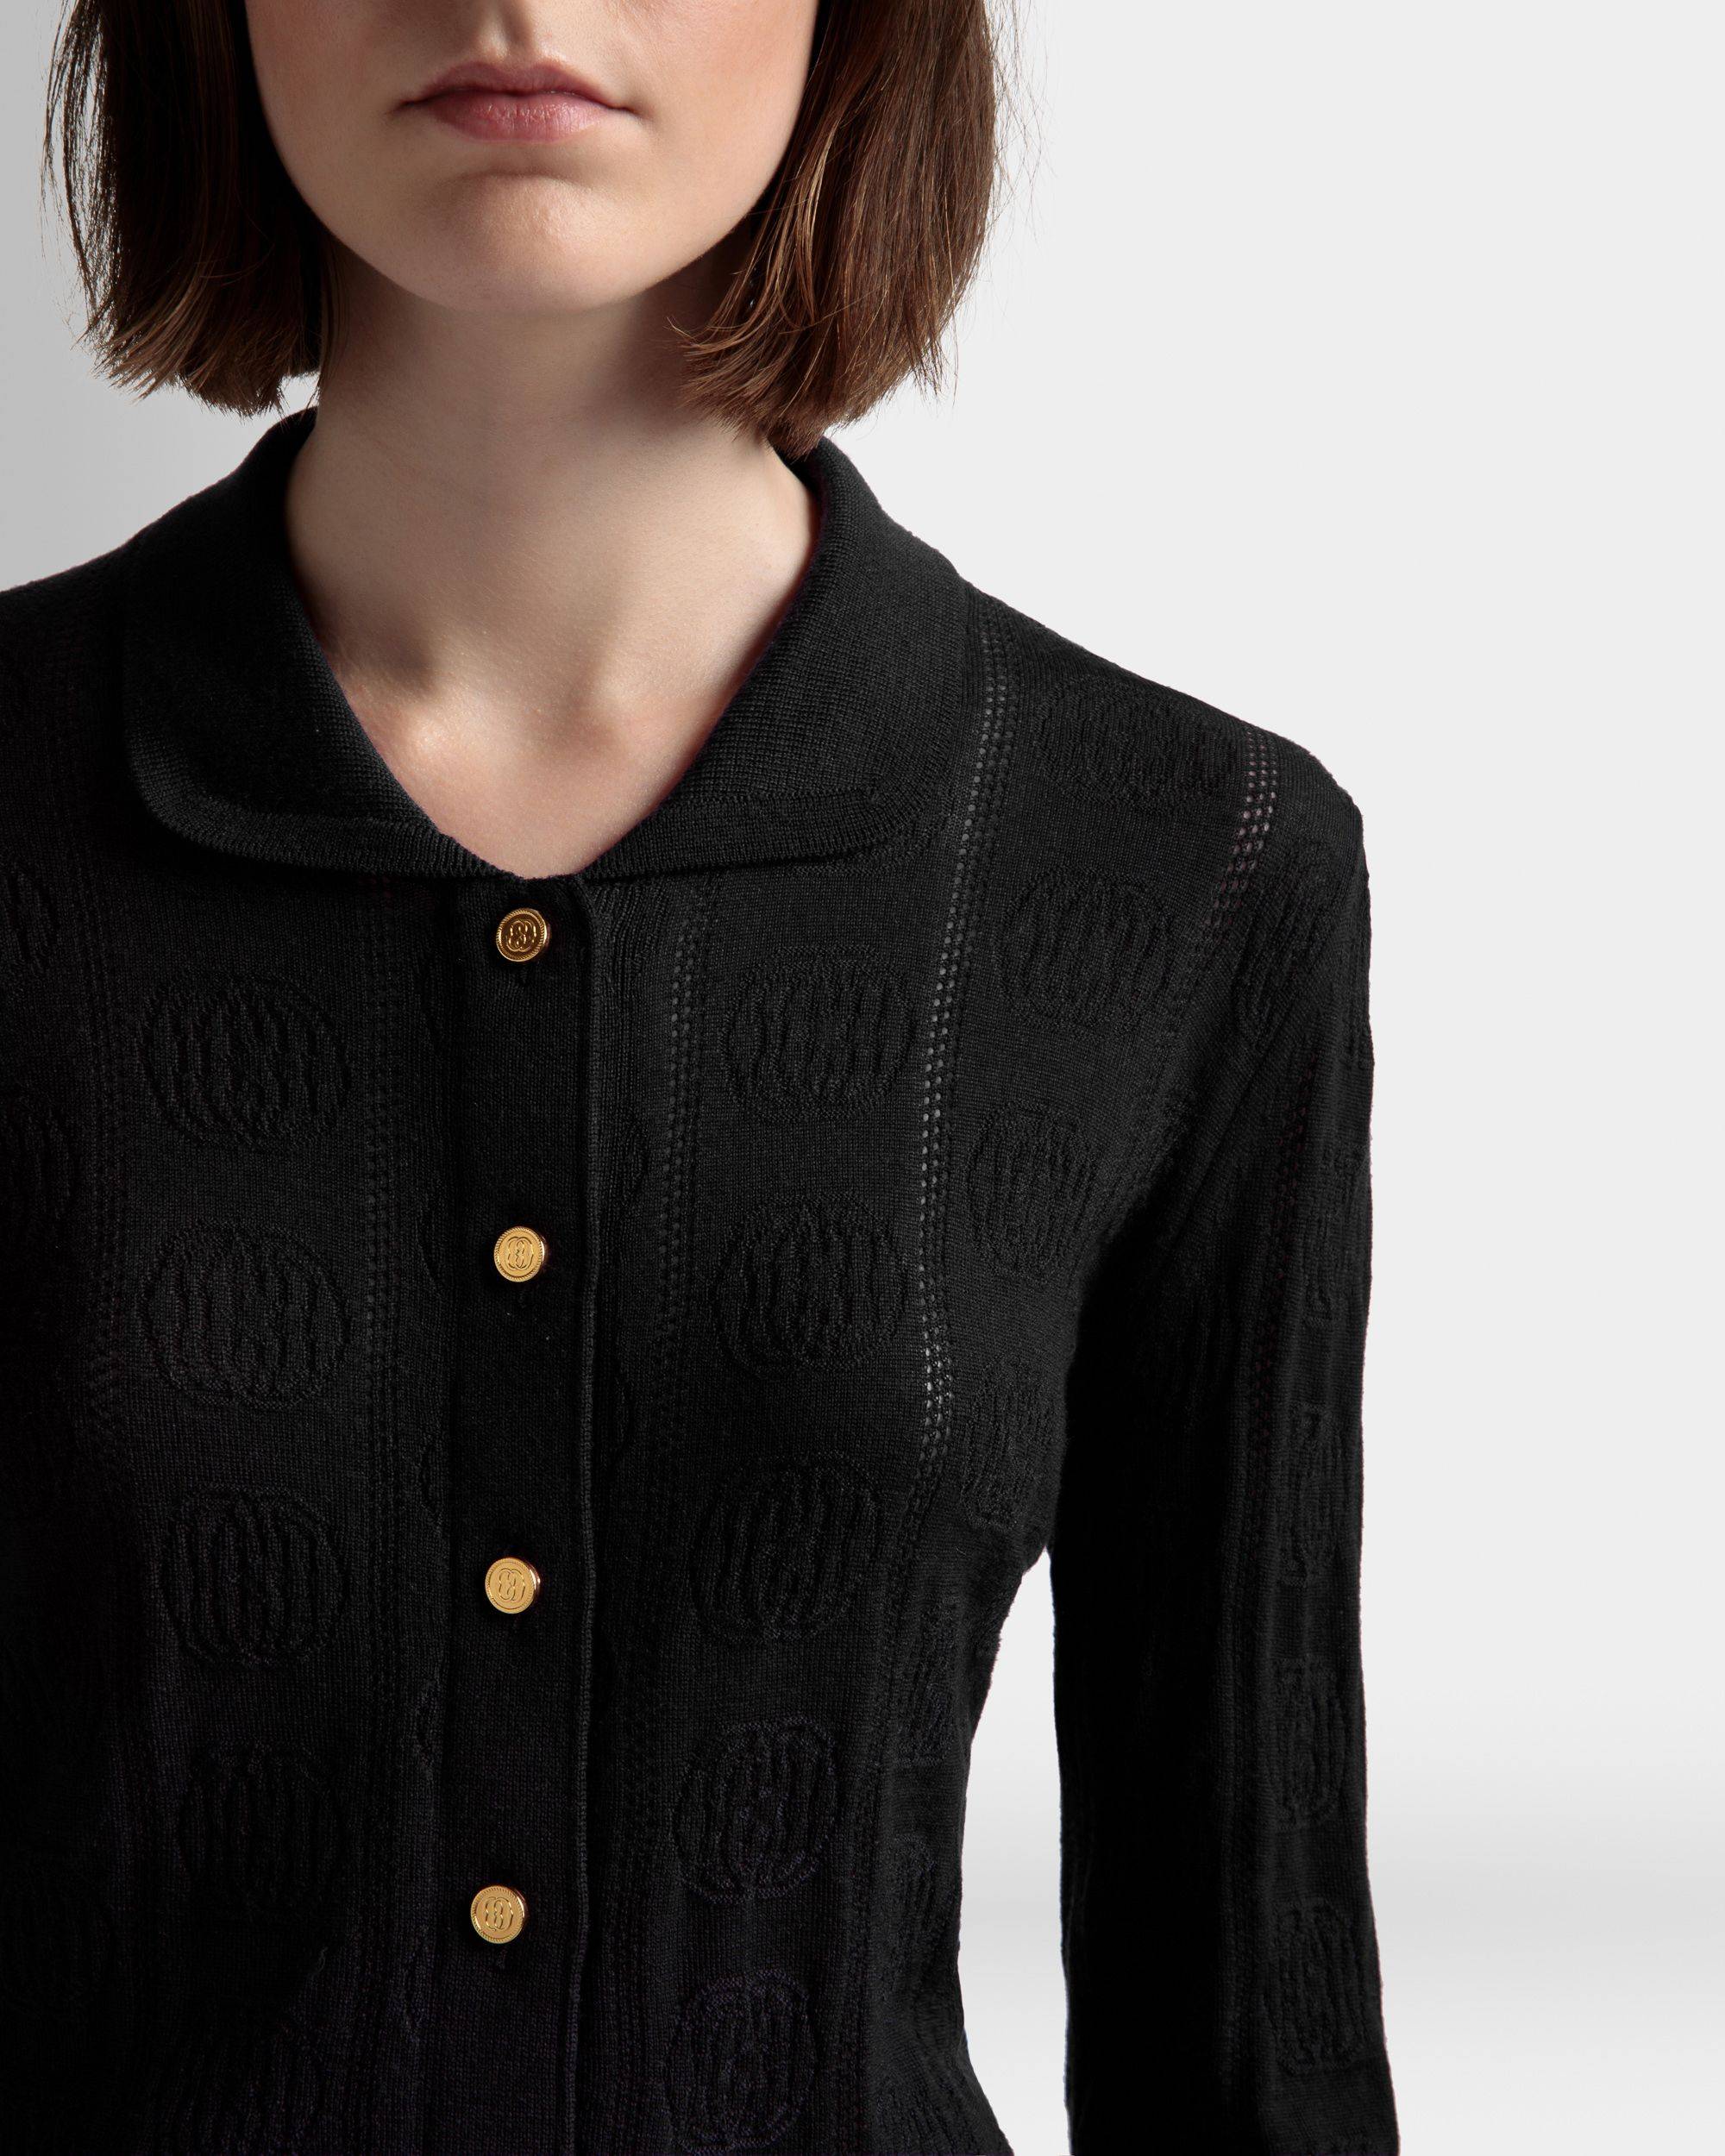 Langarm-Poloshirt mit Strickdetail | Poloshirt für Damen | Schwarze Wolle | Bally | Model getragen Detail